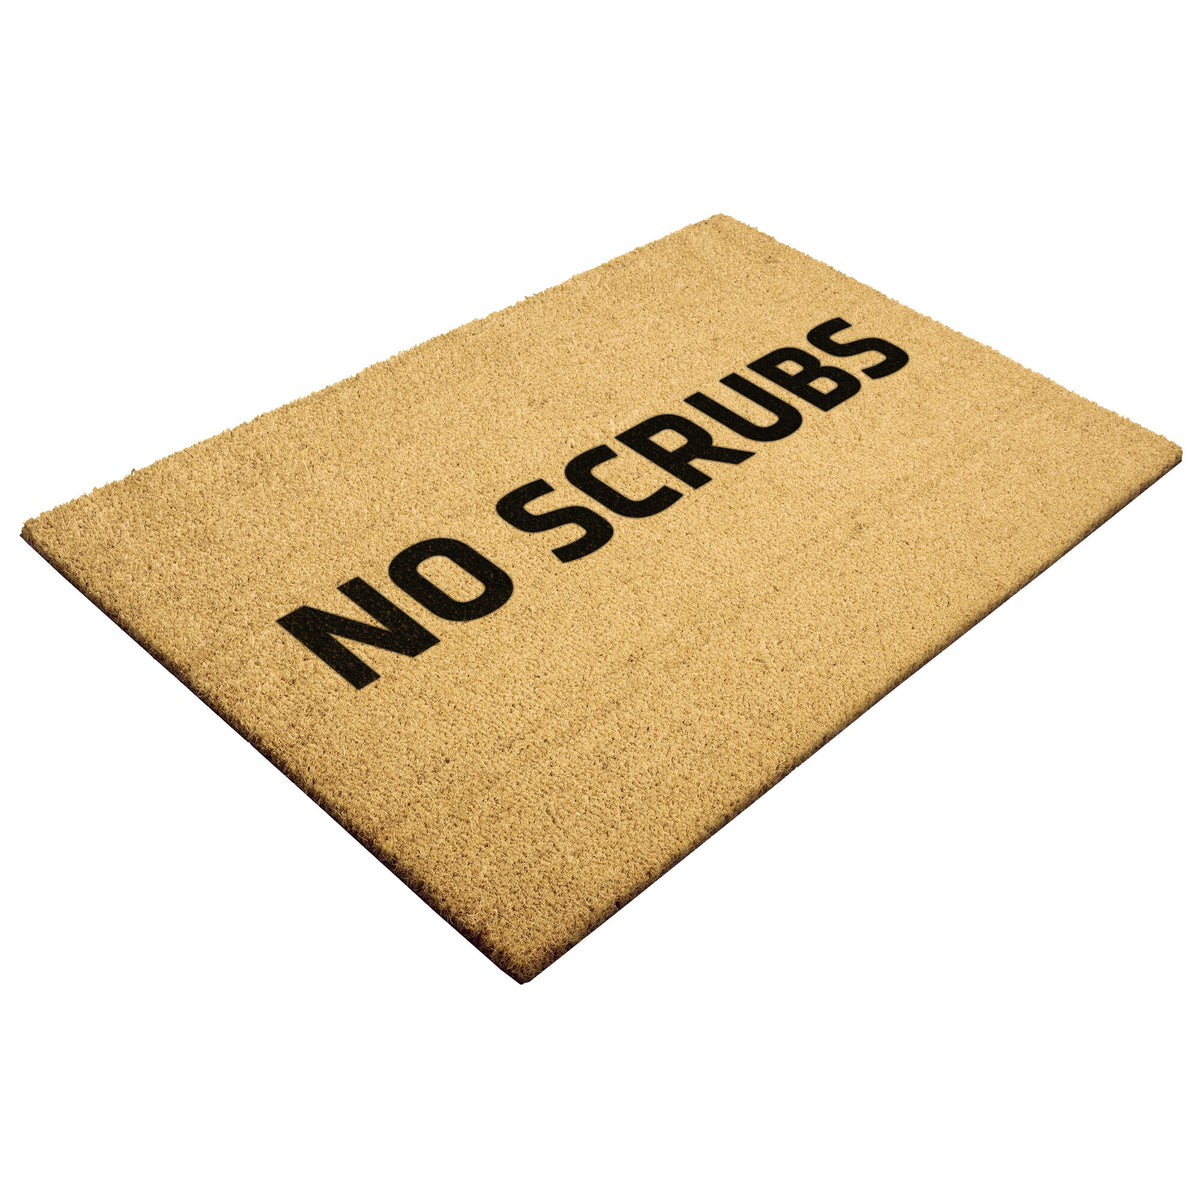 No Scrubs Doormat